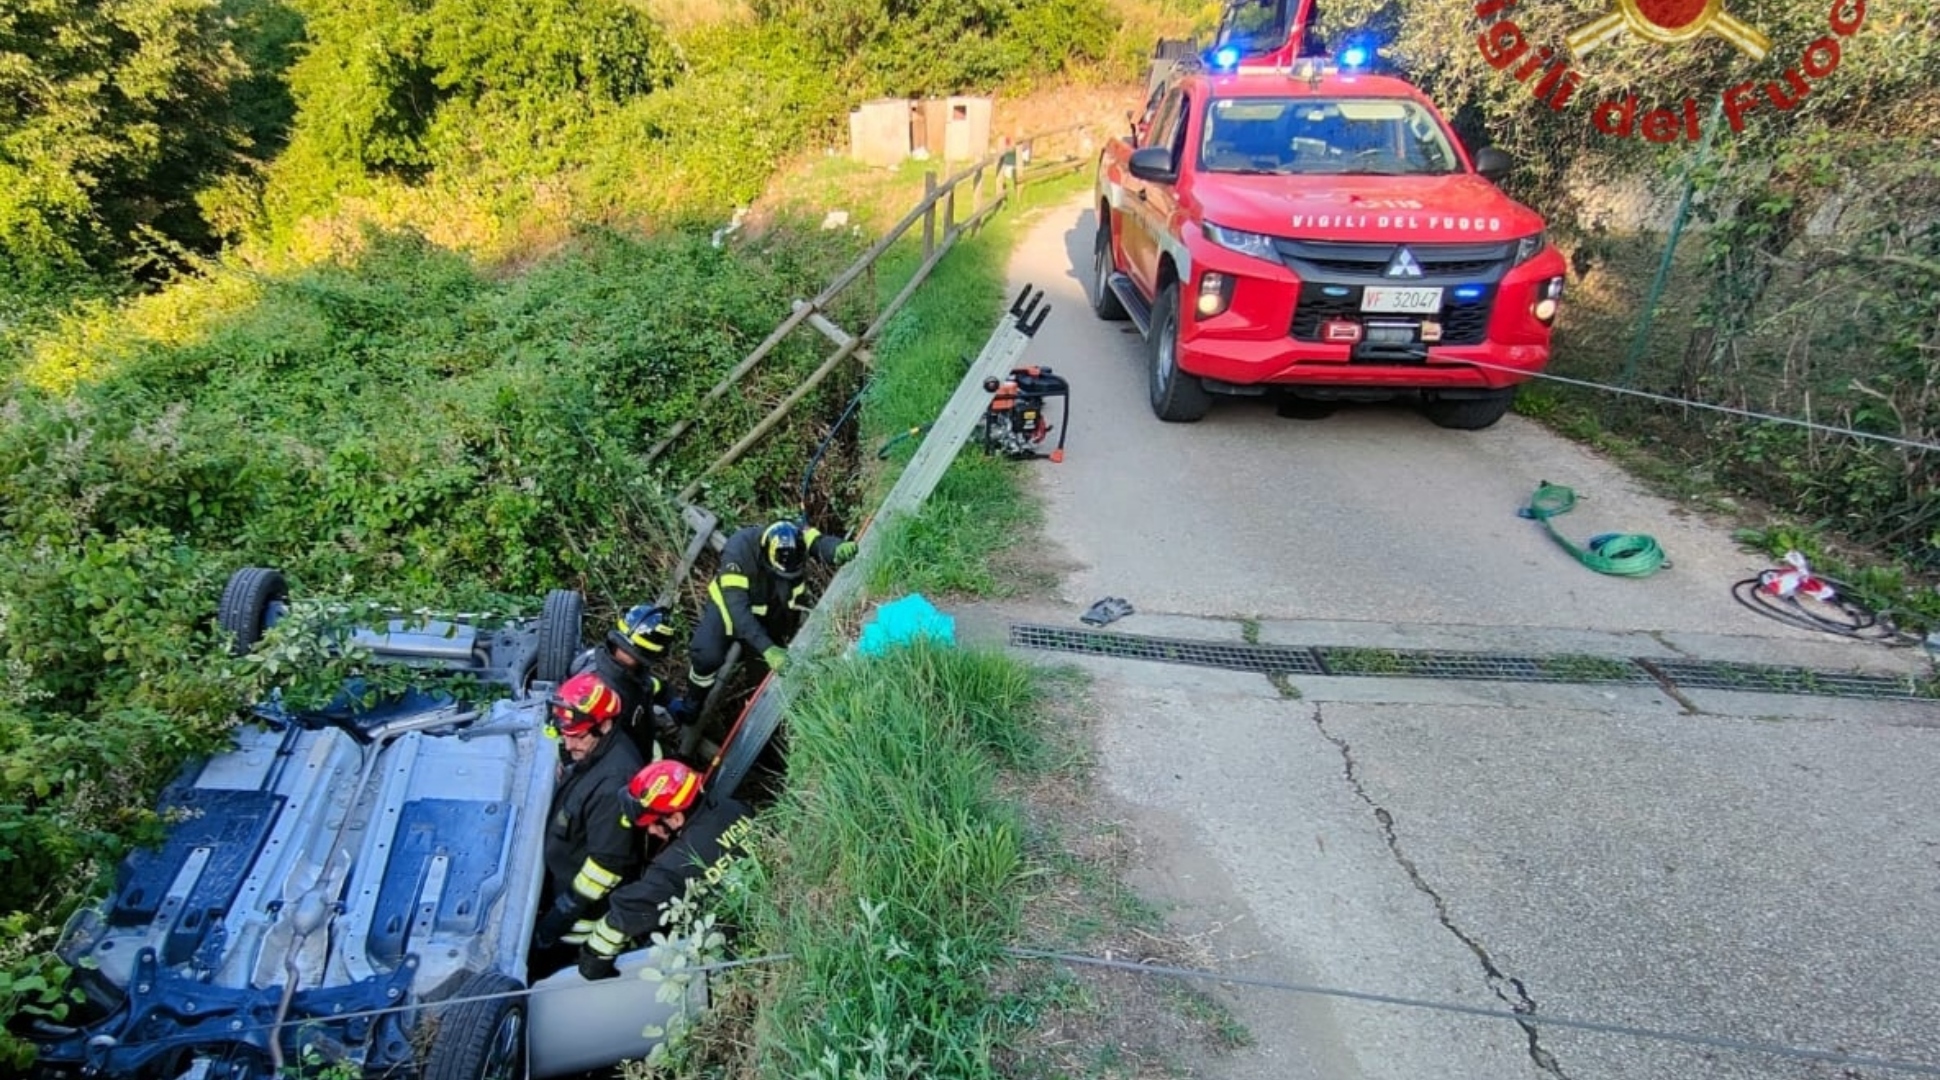 Auto ribaltata in un fosso: donna intrappolata salvata dai pompieri